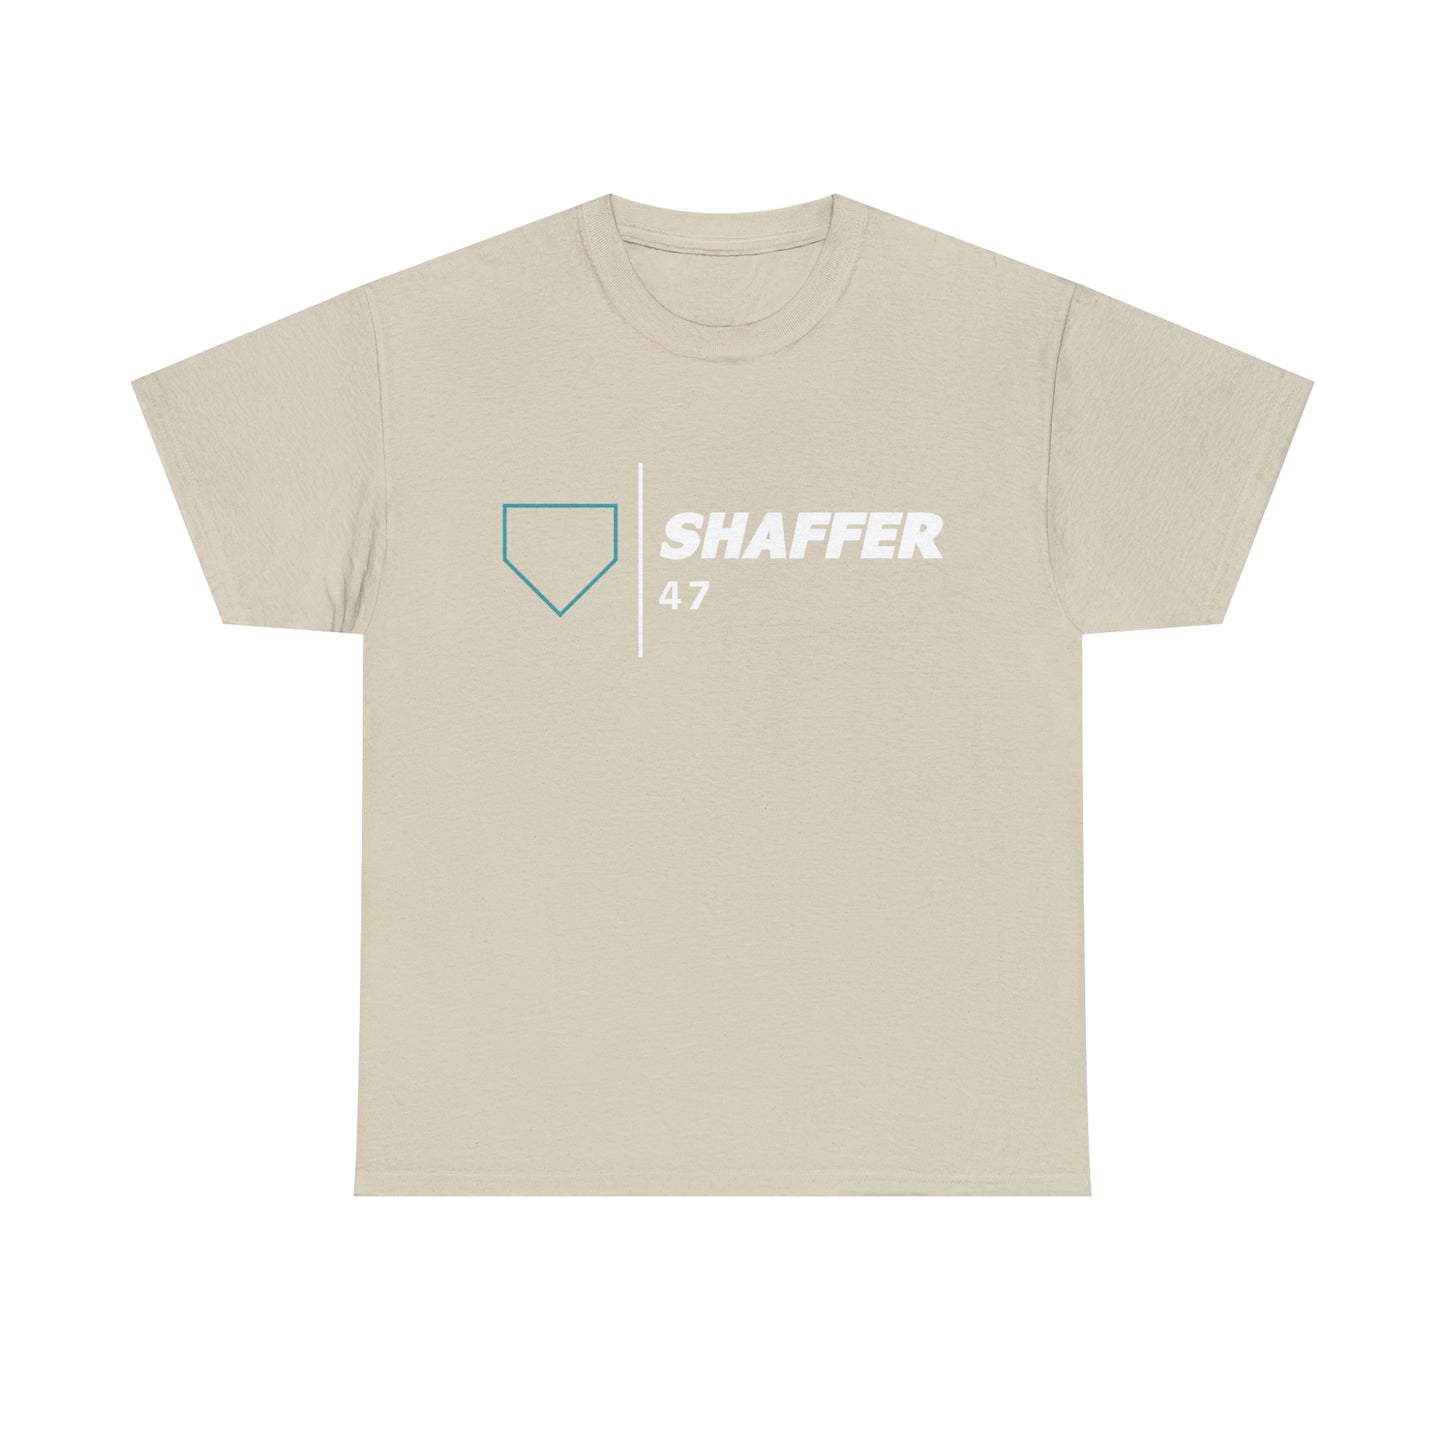 Bryson Shaffer "SHAFFER 47" Tee